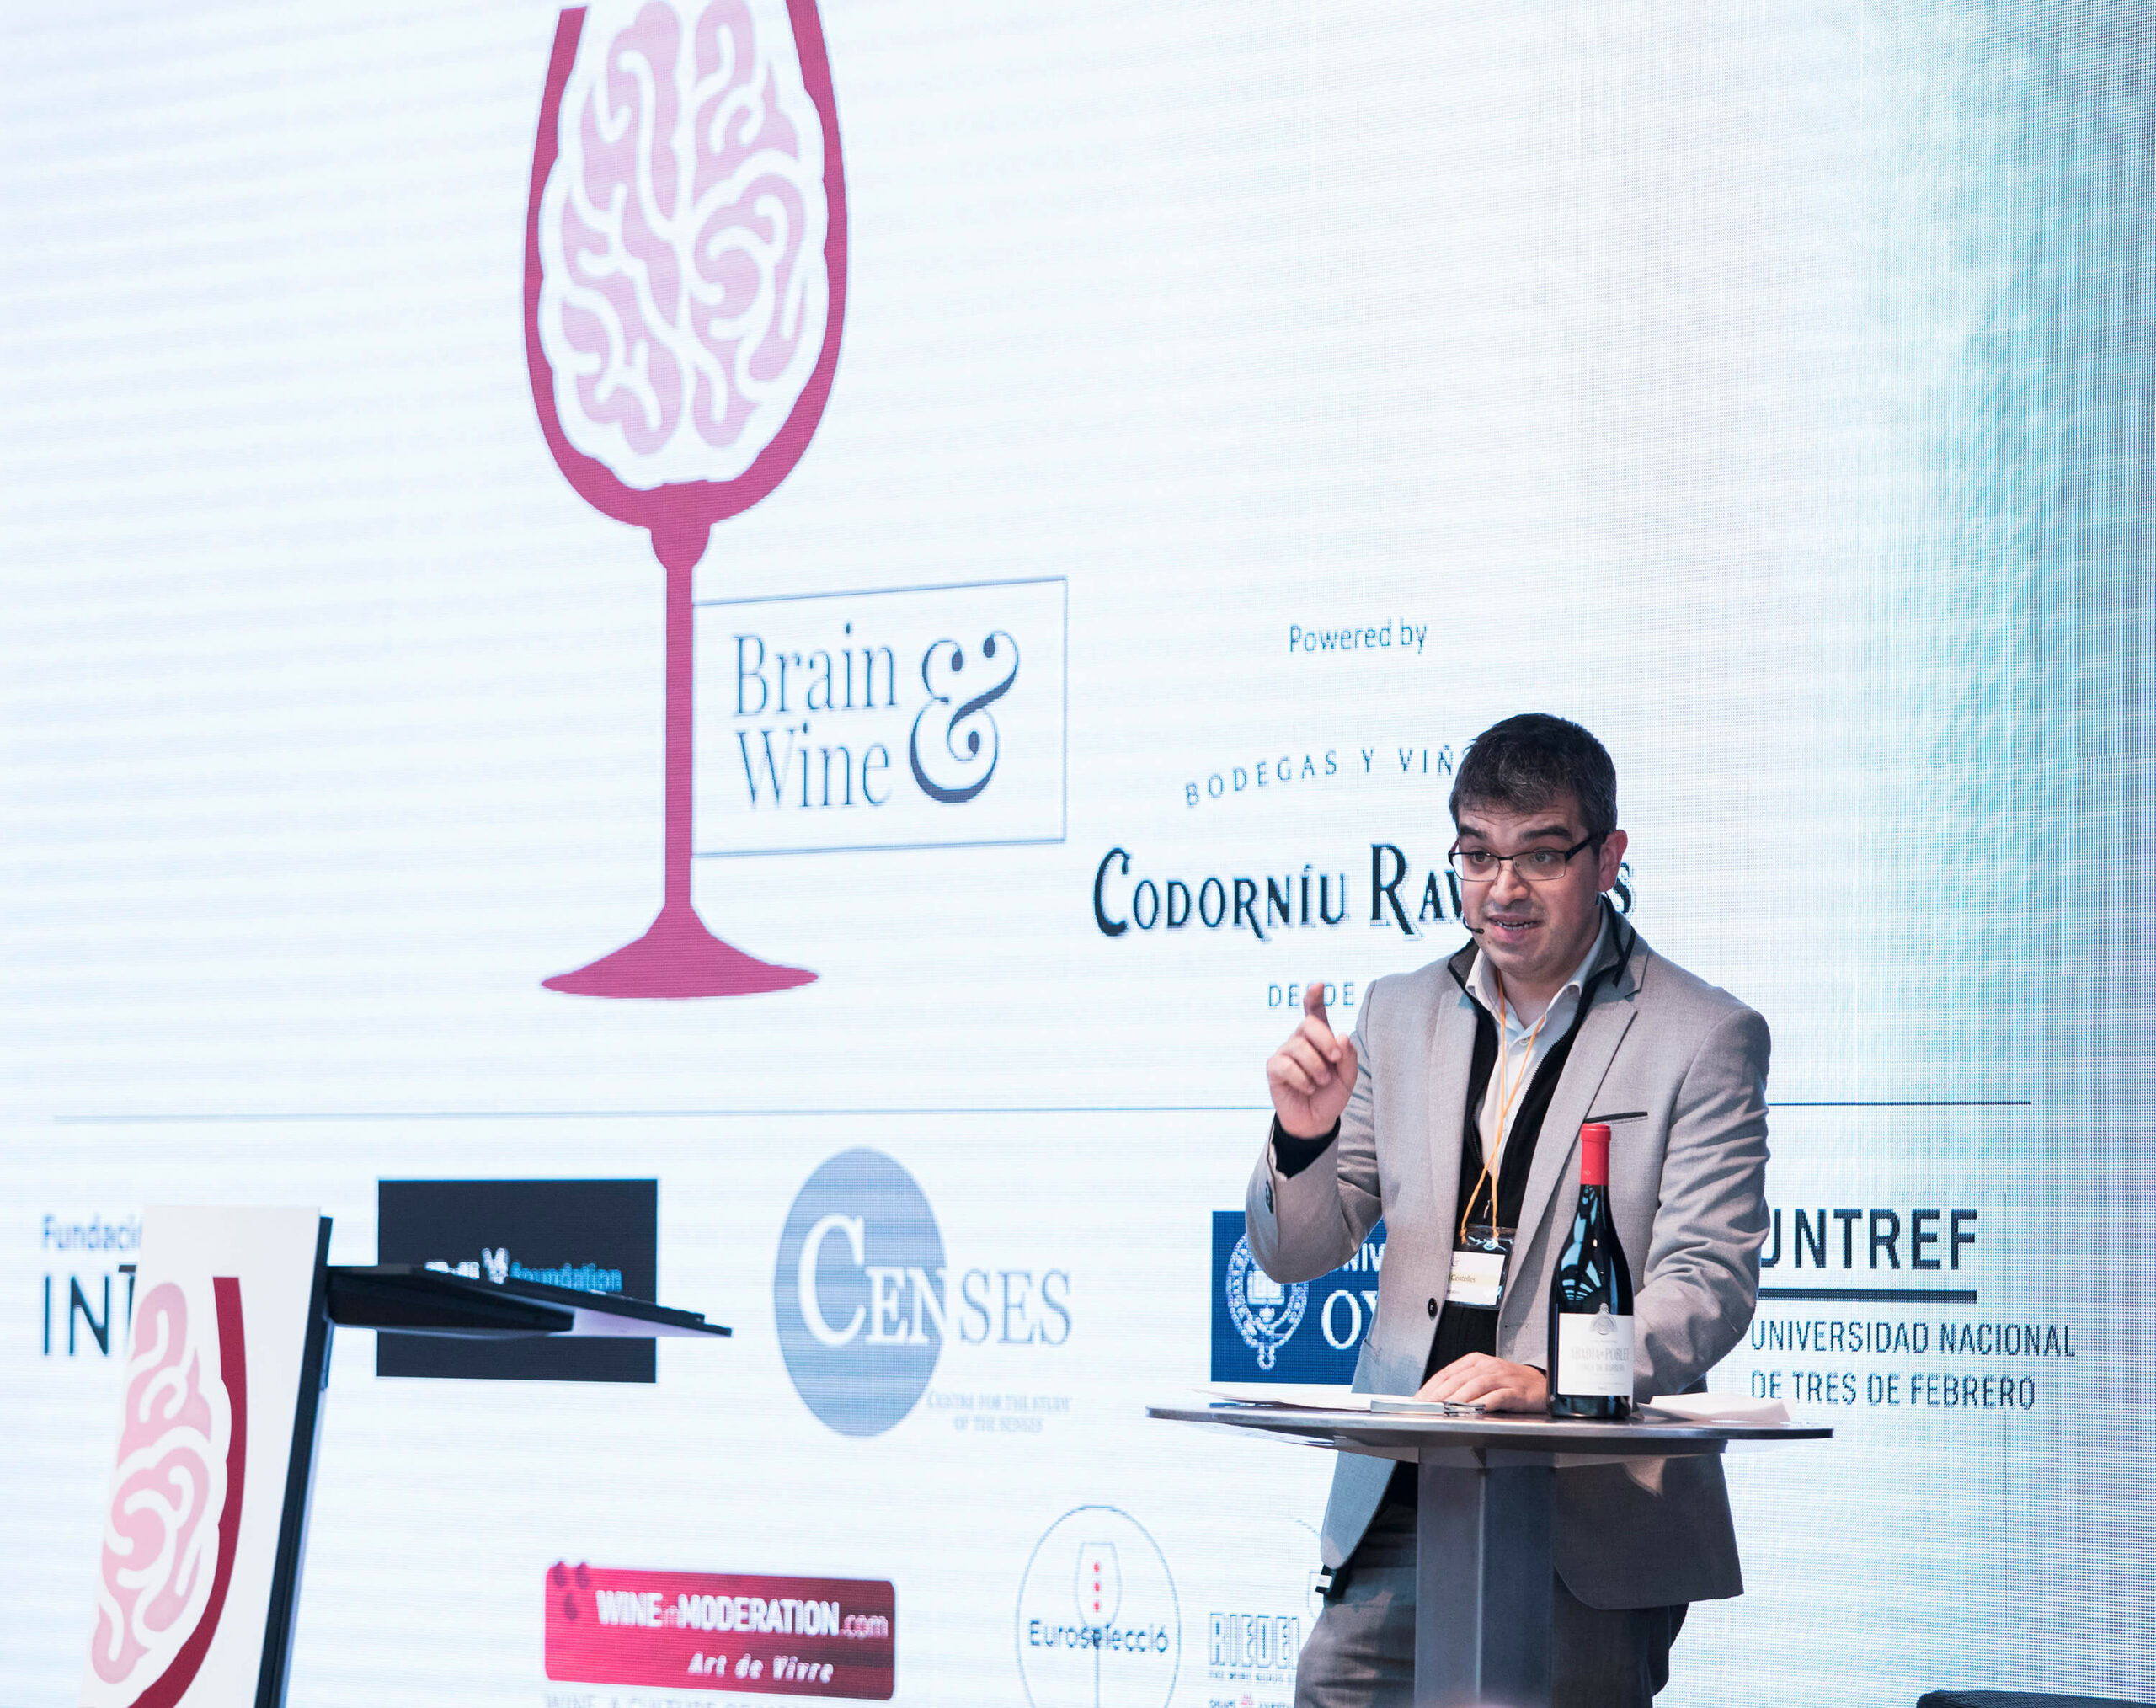 Ferran centelles en Vinos y Mente (brain and wine)